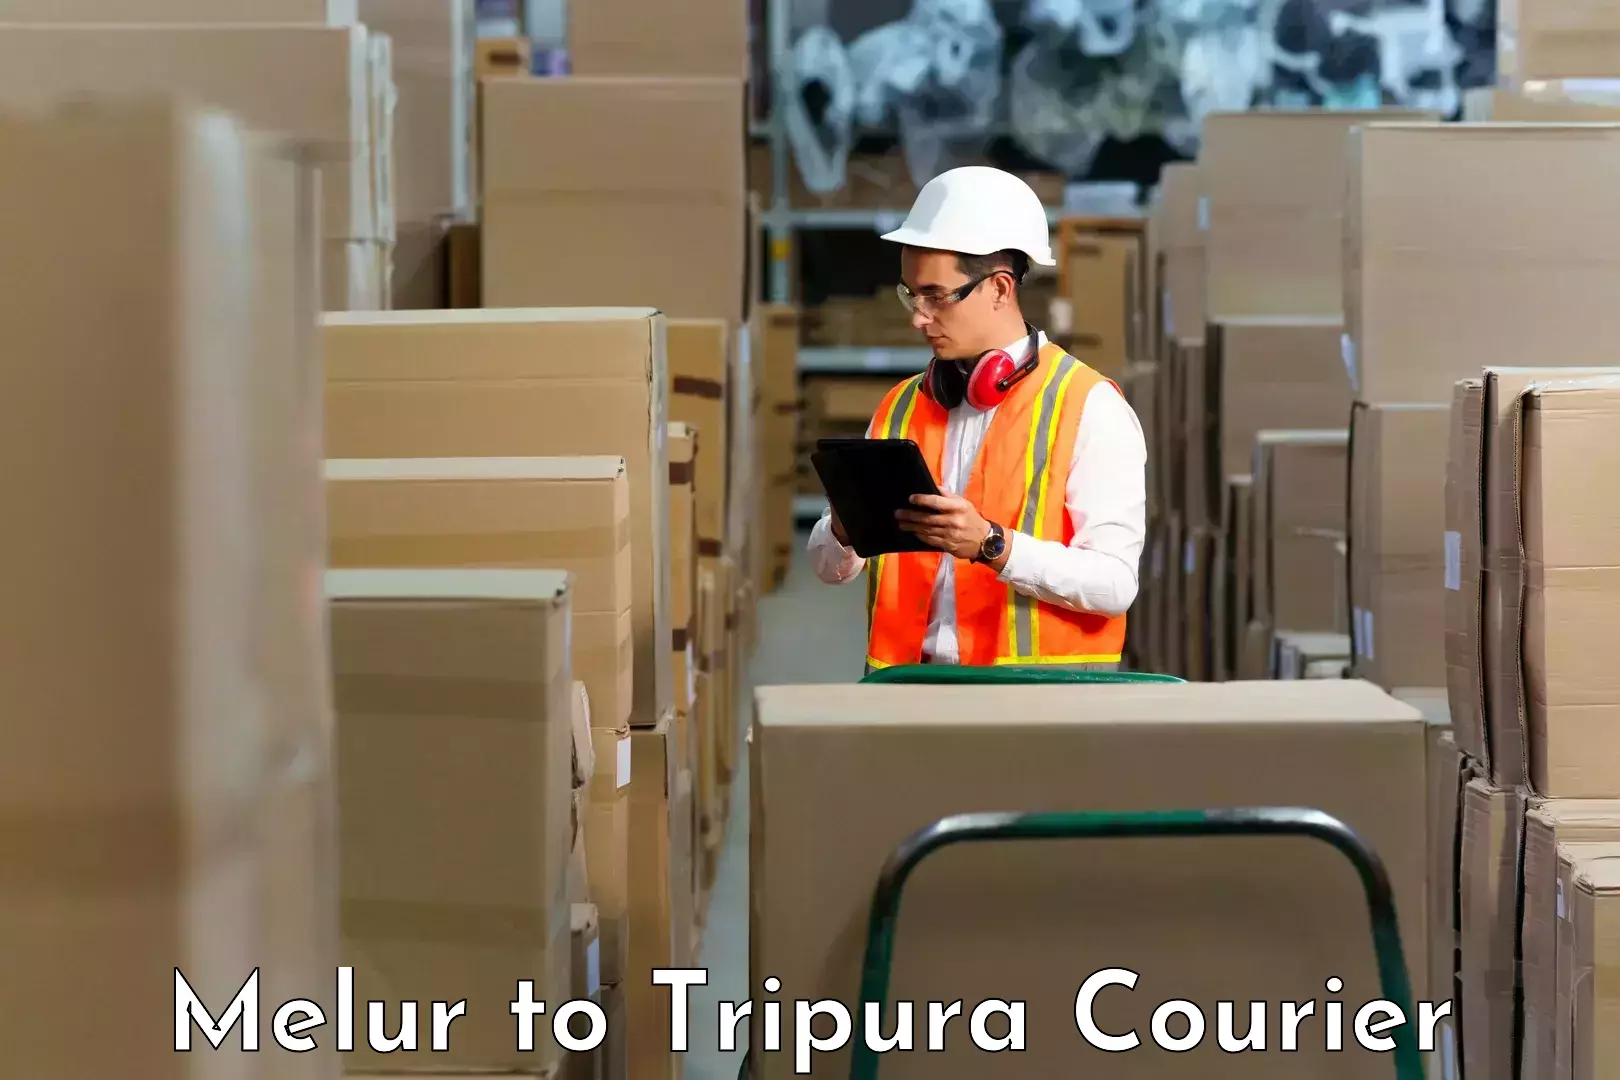 Courier service innovation Melur to IIIT Agartala